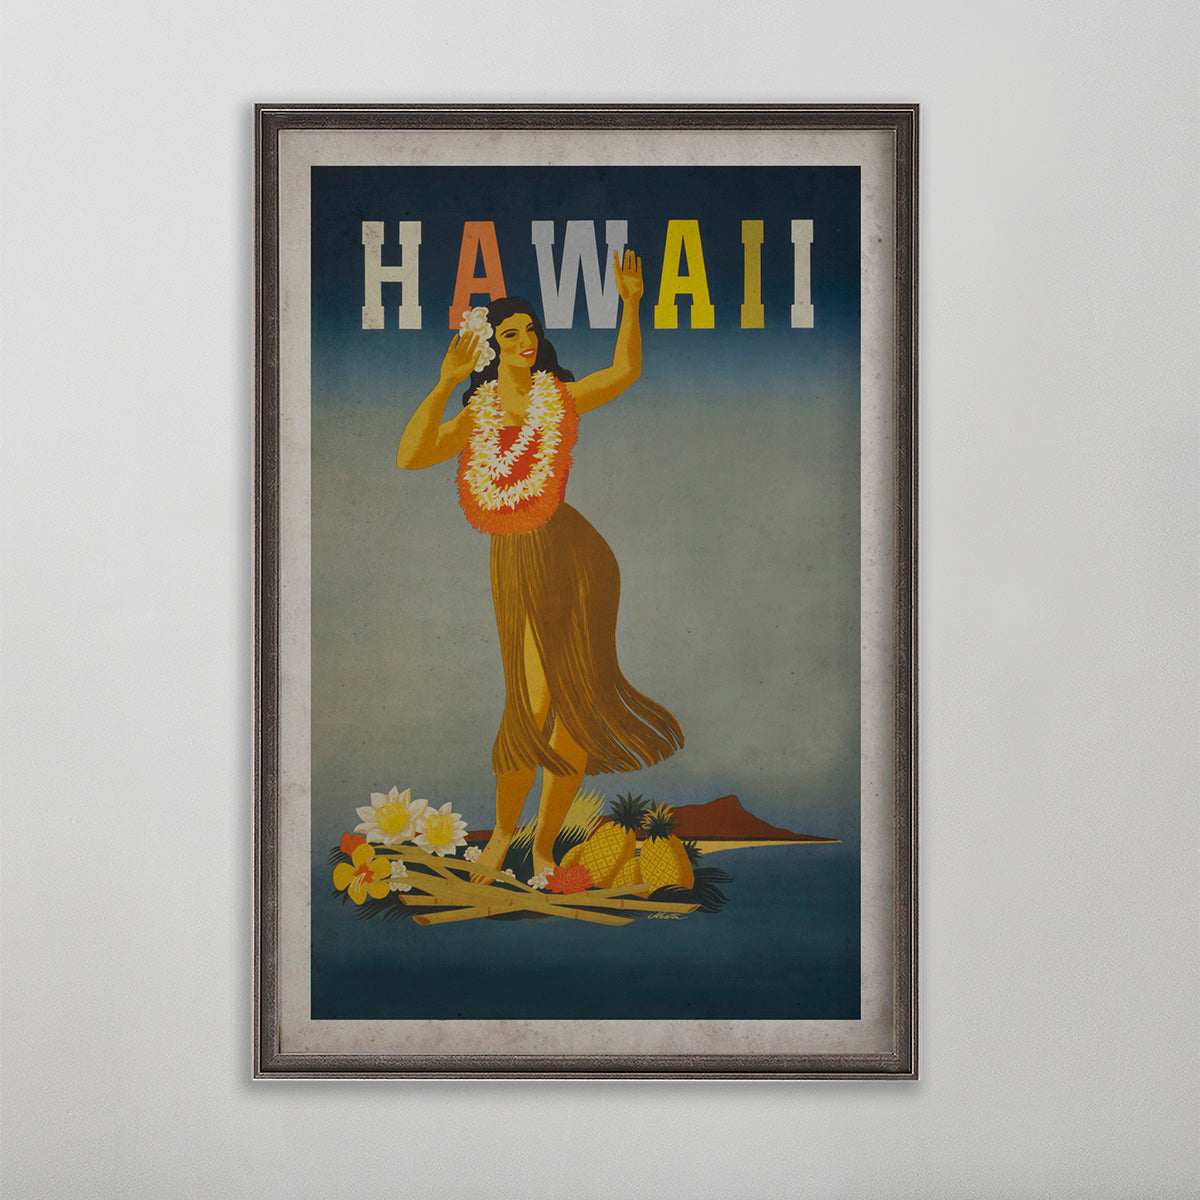 Hawaii vintage travel poster. Hawaiian woman dancing. 